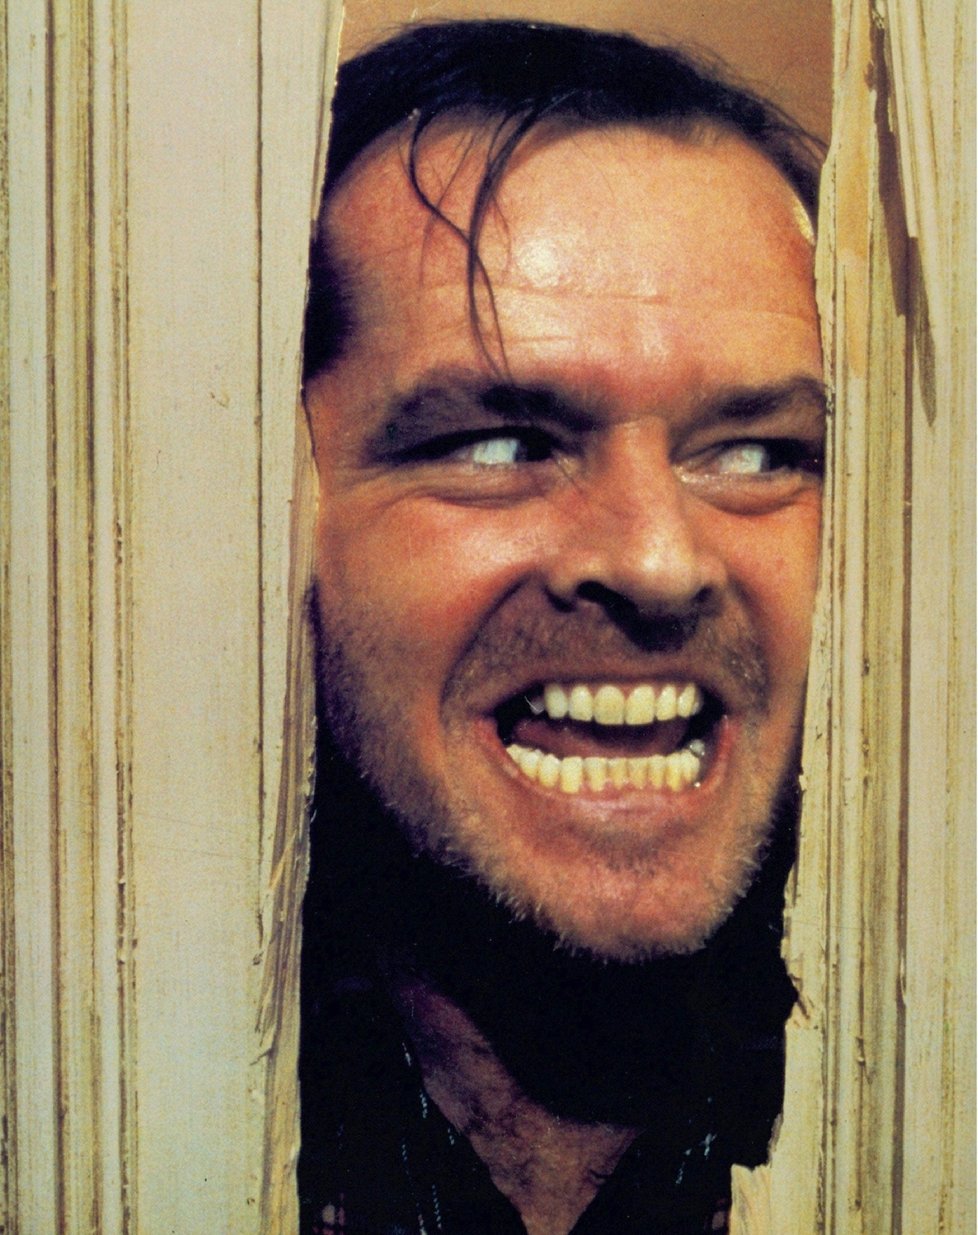 Jack Nicholson v hororu Osvícení.